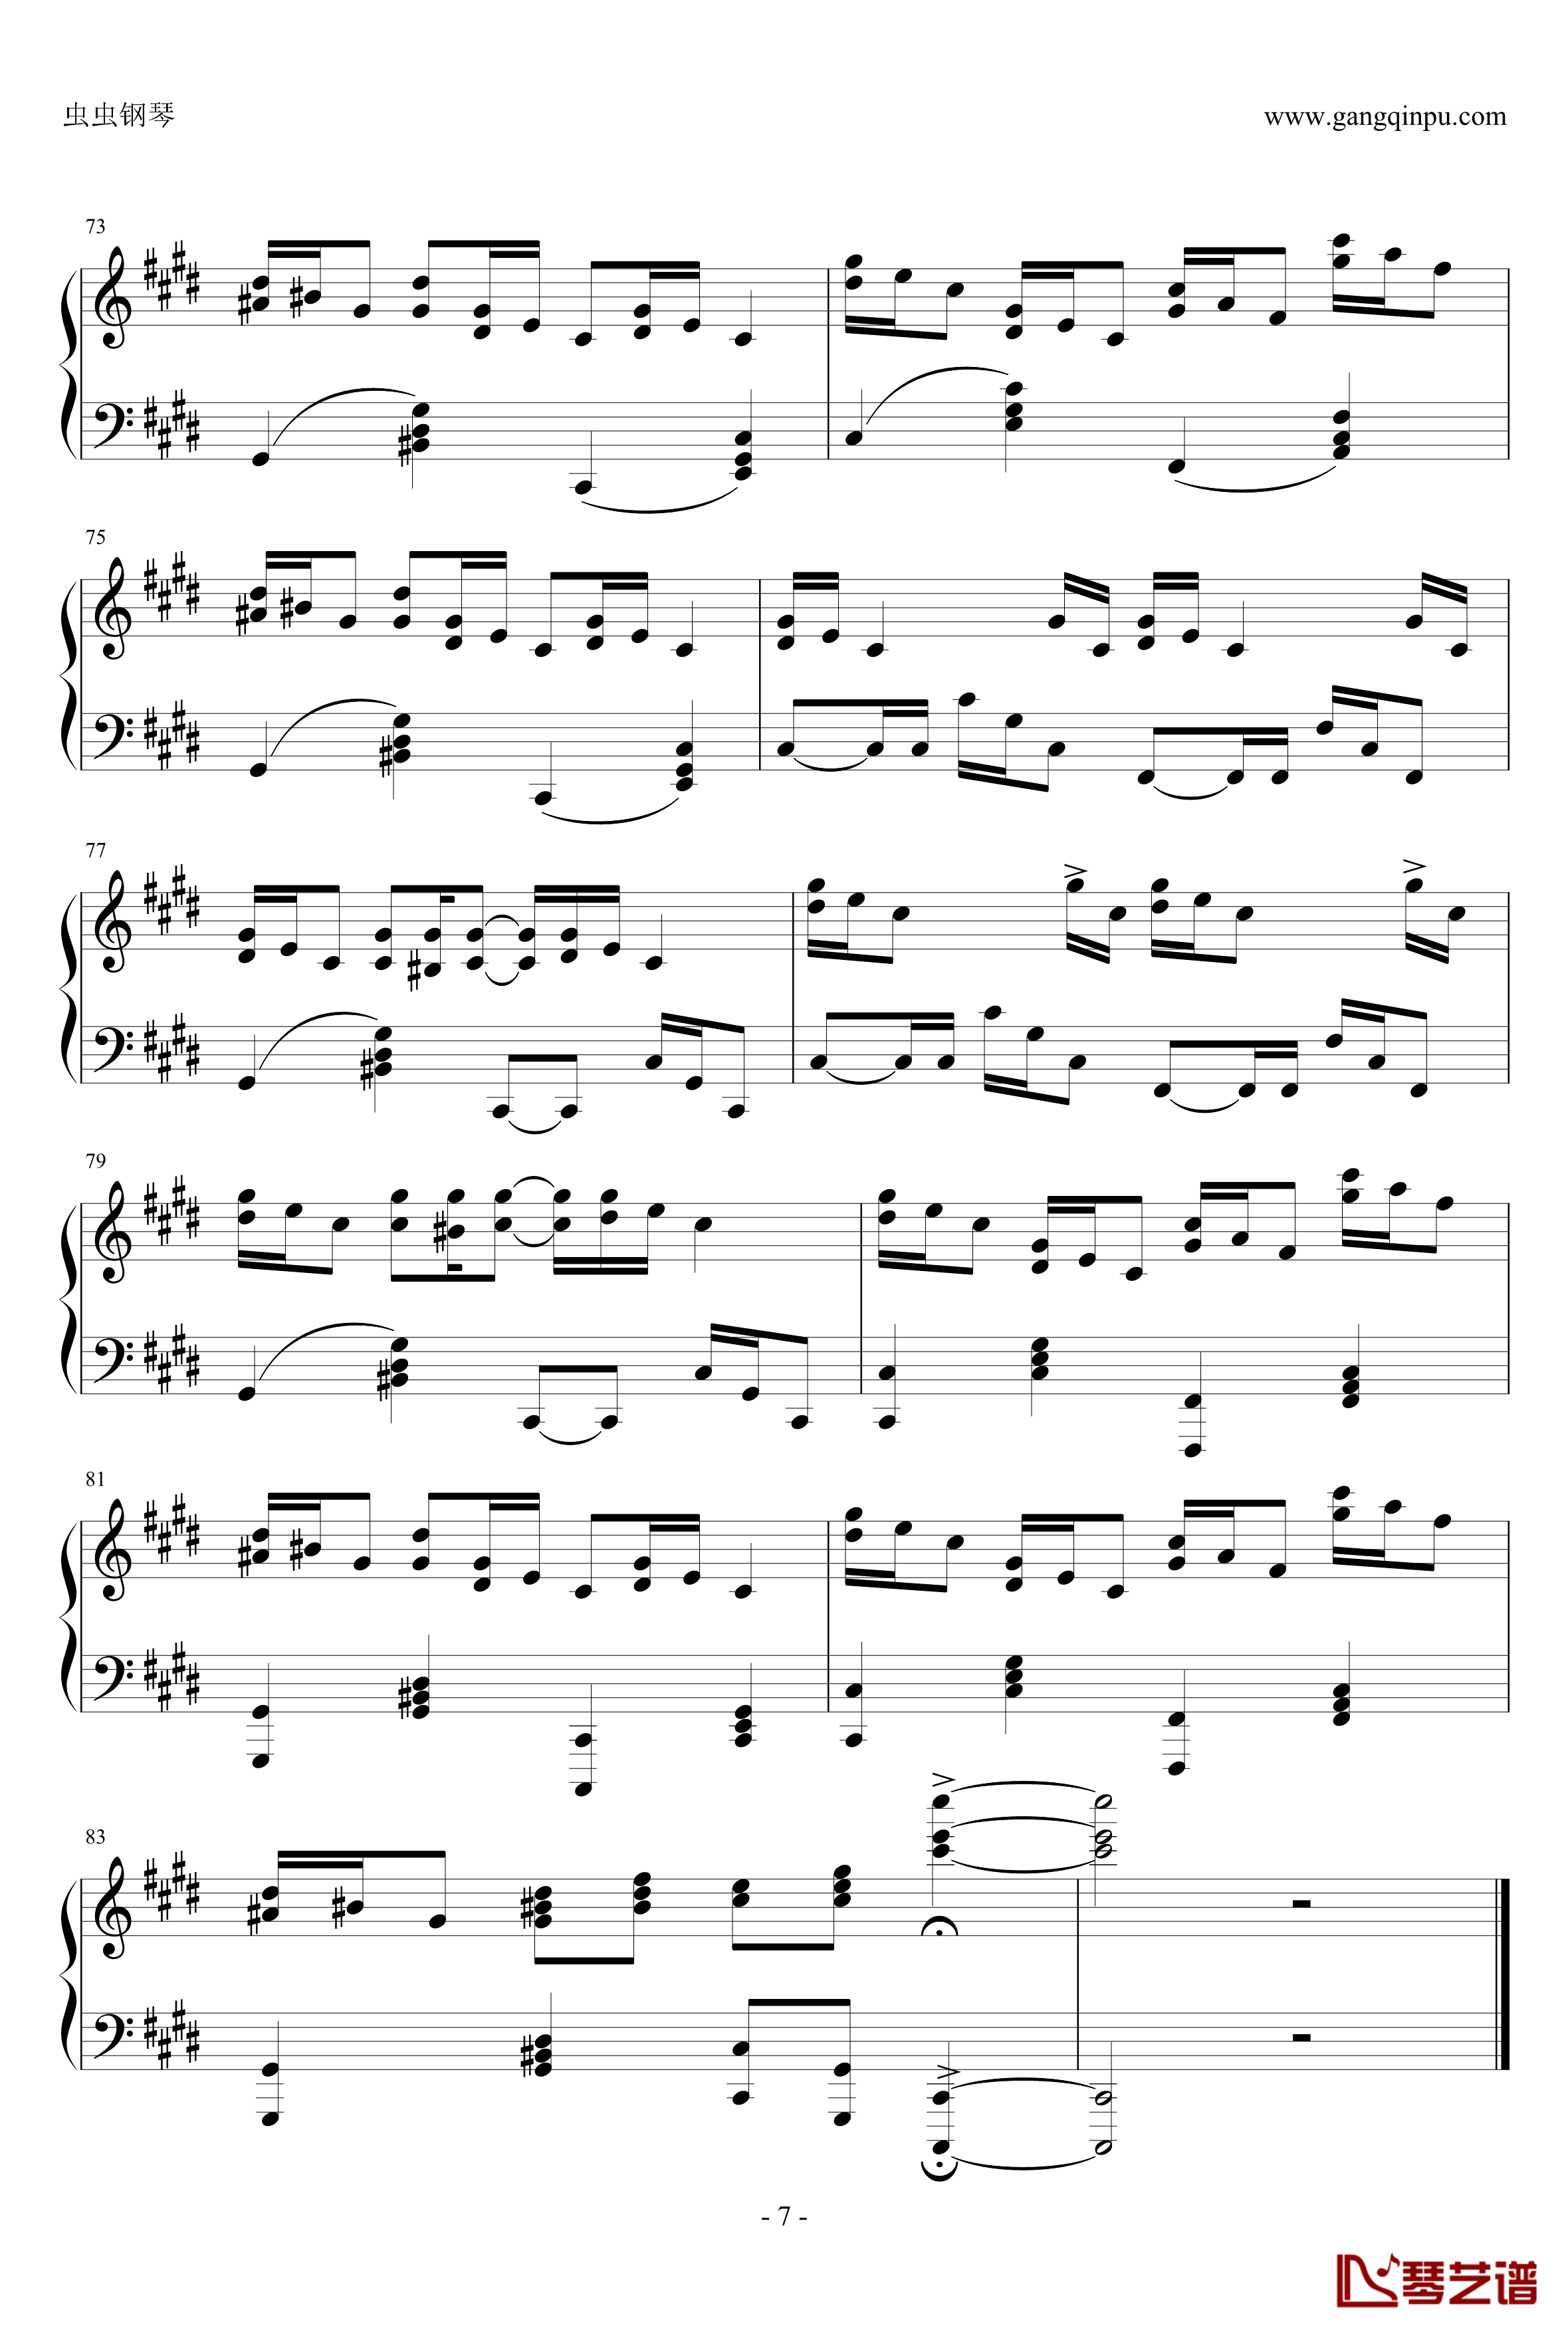 克罗地亚狂想曲钢琴谱-完美版-马克西姆-Maksim·Mrvica7